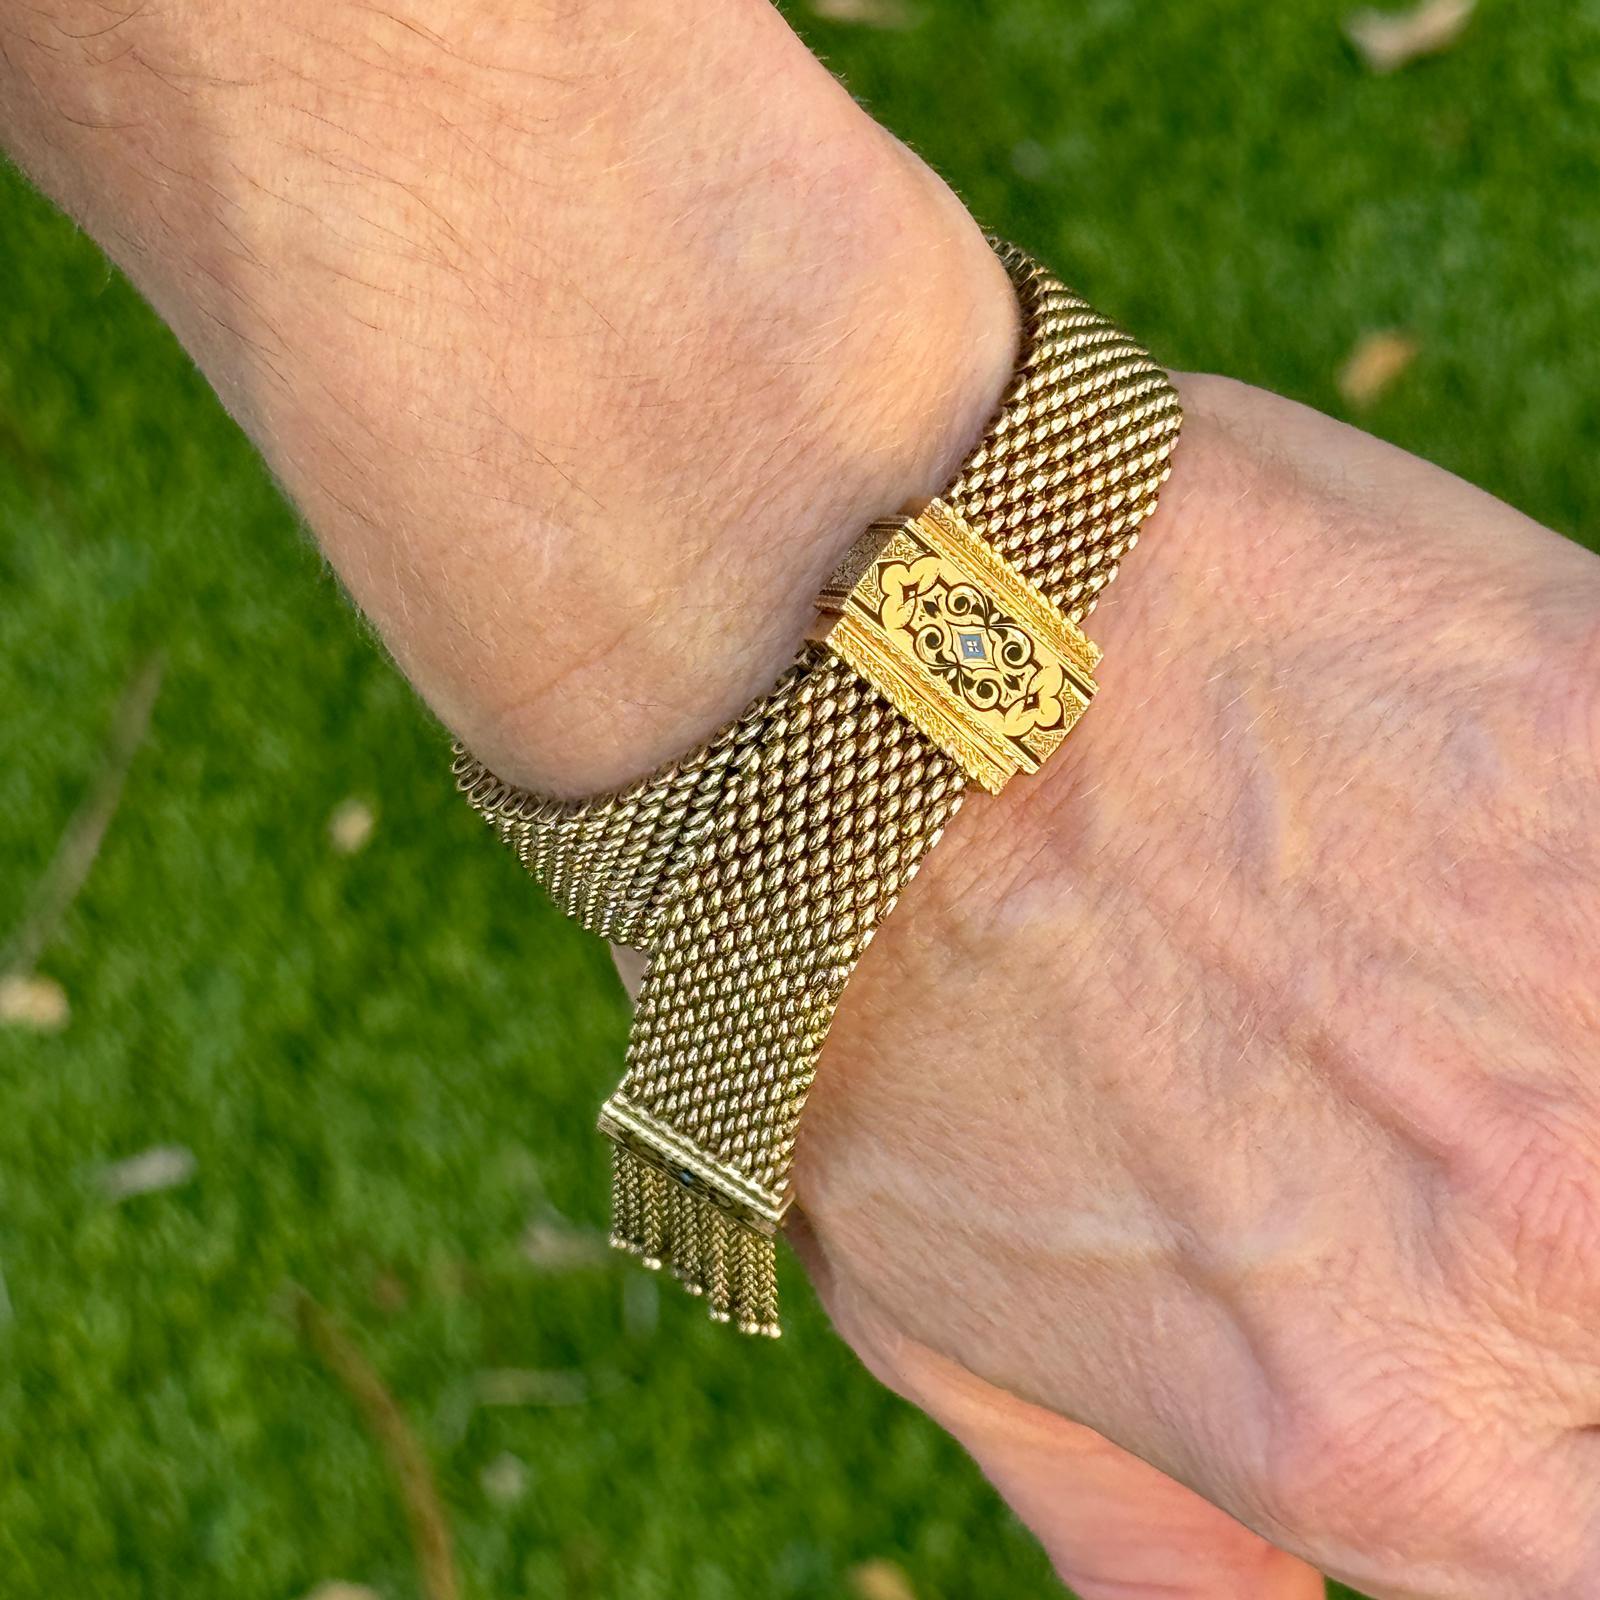 Wunderschönes viktorianisches Armband mit Quasten, handgefertigt aus 14 Karat Gelbgold. Das geflochtene Goldarmband hat ein schwarzes Emaille-Design, Quasten und einen Schiebeverschluss und kann daher von allen Handgelenksgrößen getragen werden. Das